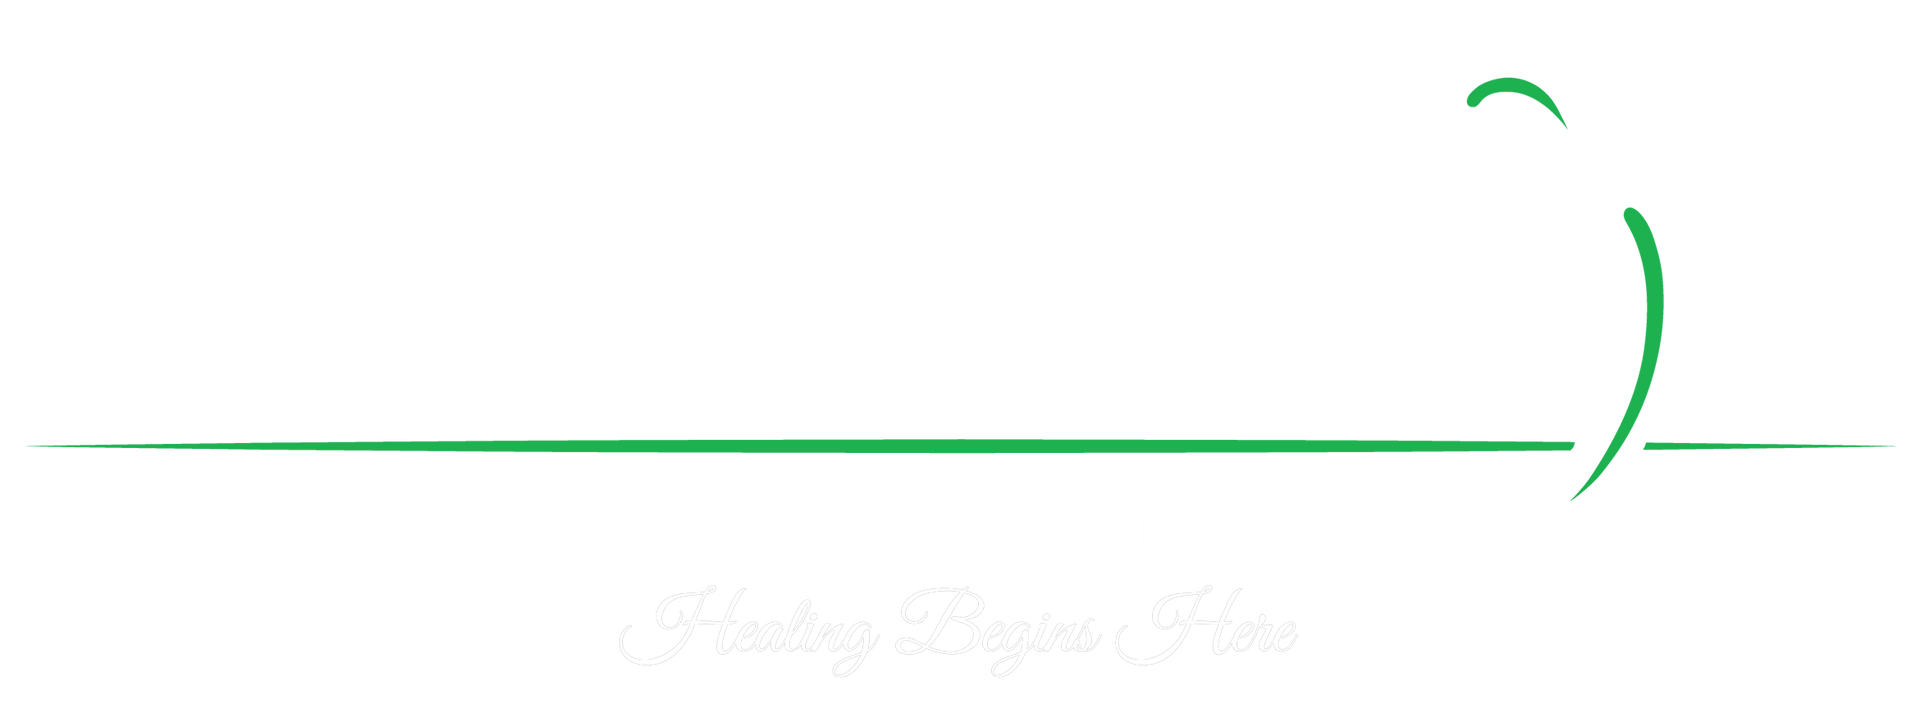 Ott & Lee Funeral Homes Logo